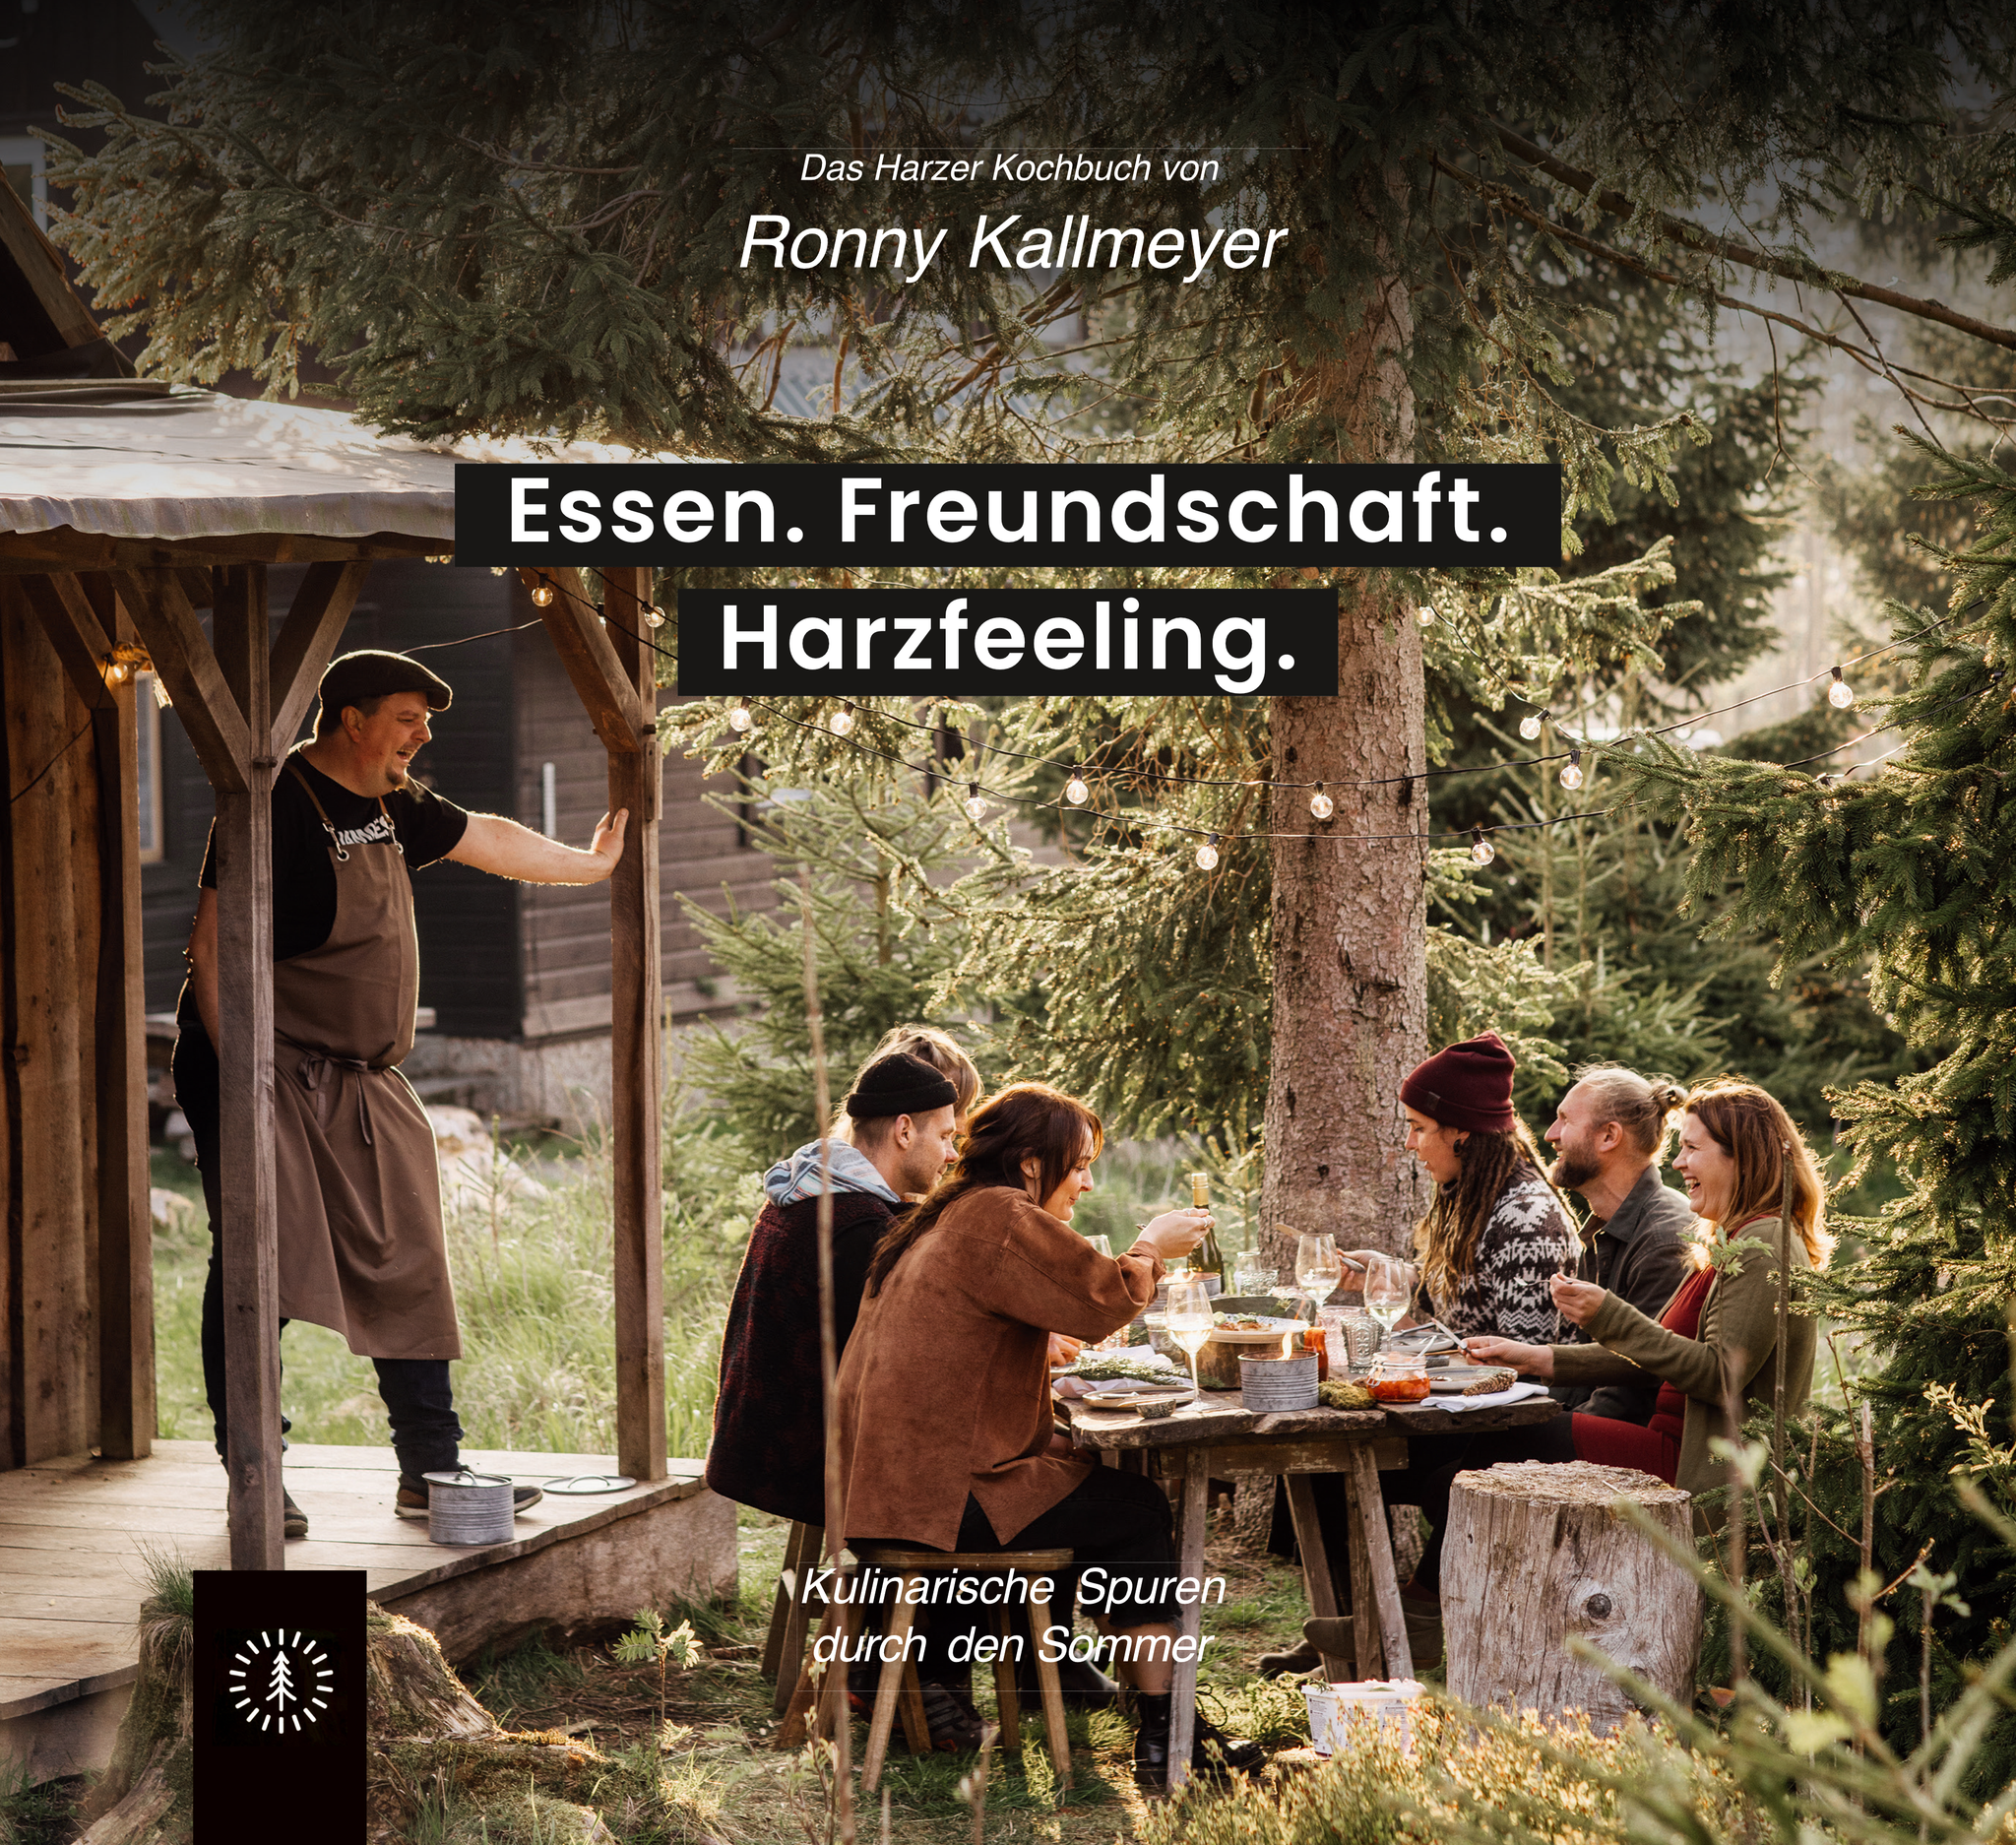 Das Harzfeeling Kochbuch mit Ronny Kallmeyer - Essen. Freundschaft. Harzfeeling.